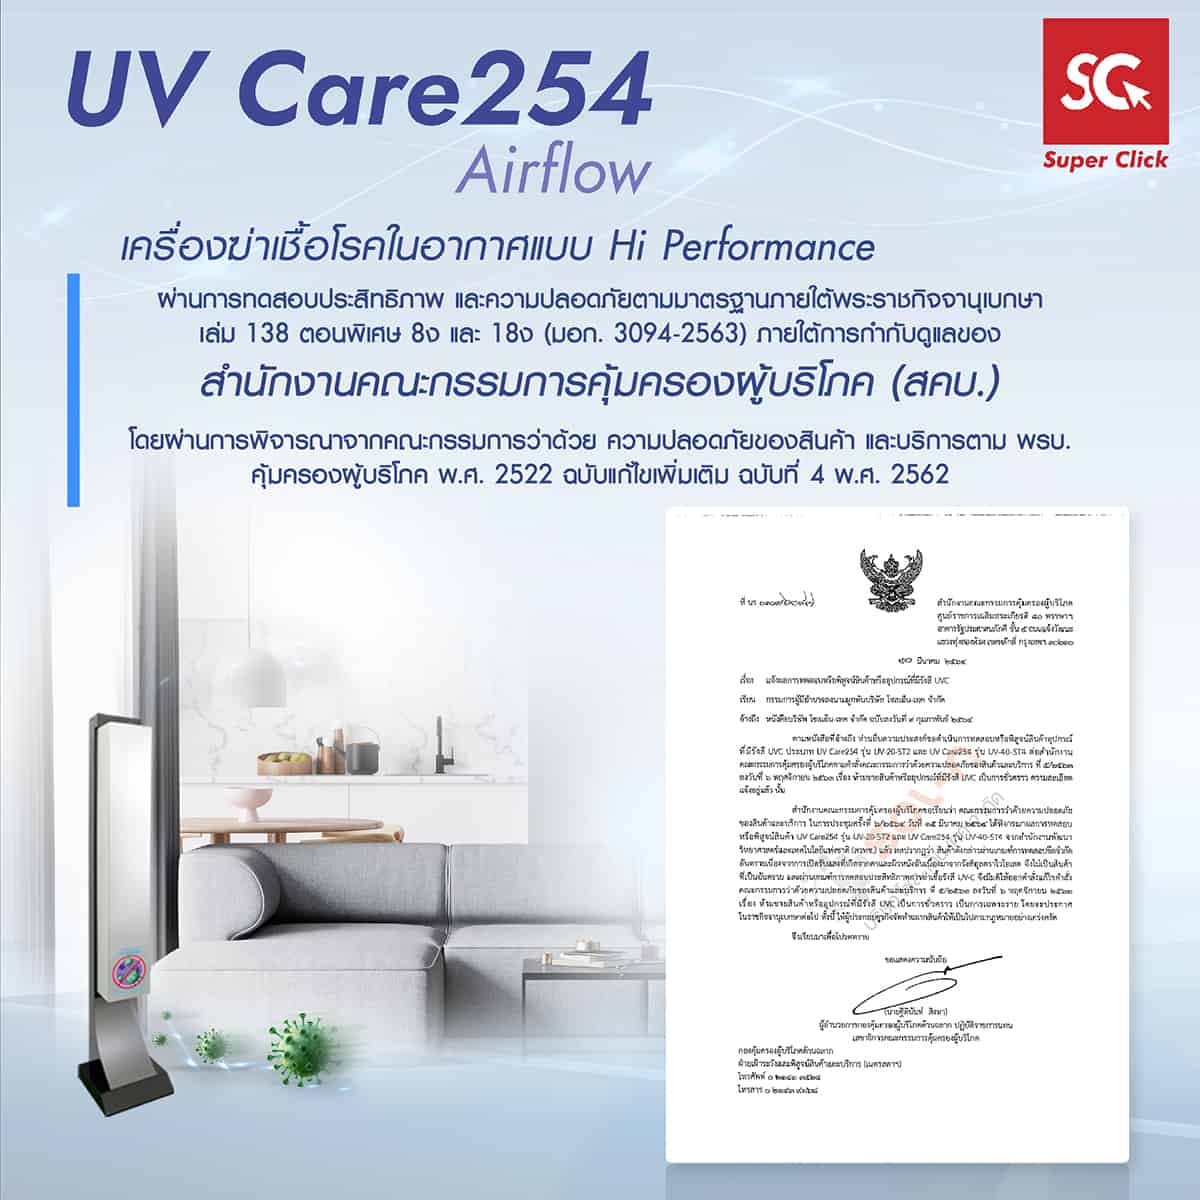 UV Care254 Airflow เครื่องฆ่าเชื้อโรคในอากาศแบบ Hi Performance ผ่านการทดสอบประสิทธภาพ และความปลอดภัยตามมาตรฐานภายใต้พระราชกิจจานุเบกษาเล่ม 138 ตอนพิเศษ 8ง และ 18ง (มอก. 3094-2563) ภายใต้การกำกับดูแลของ สำนักงานคณะกรรมการคุมครองผู้บริโภค (สคบ.) โดยผ่านการพิจารณาจากคณะกรรมการว่าด้วย ความปลอดภัยของสินค้า และบริการตาม พรบ. คุ้มครองผู้บริโภค พ.ศ. 2522 ฉบับแก้ไขเพิ่มเติม ฉบับที่ 4 พ.ศ. 2562